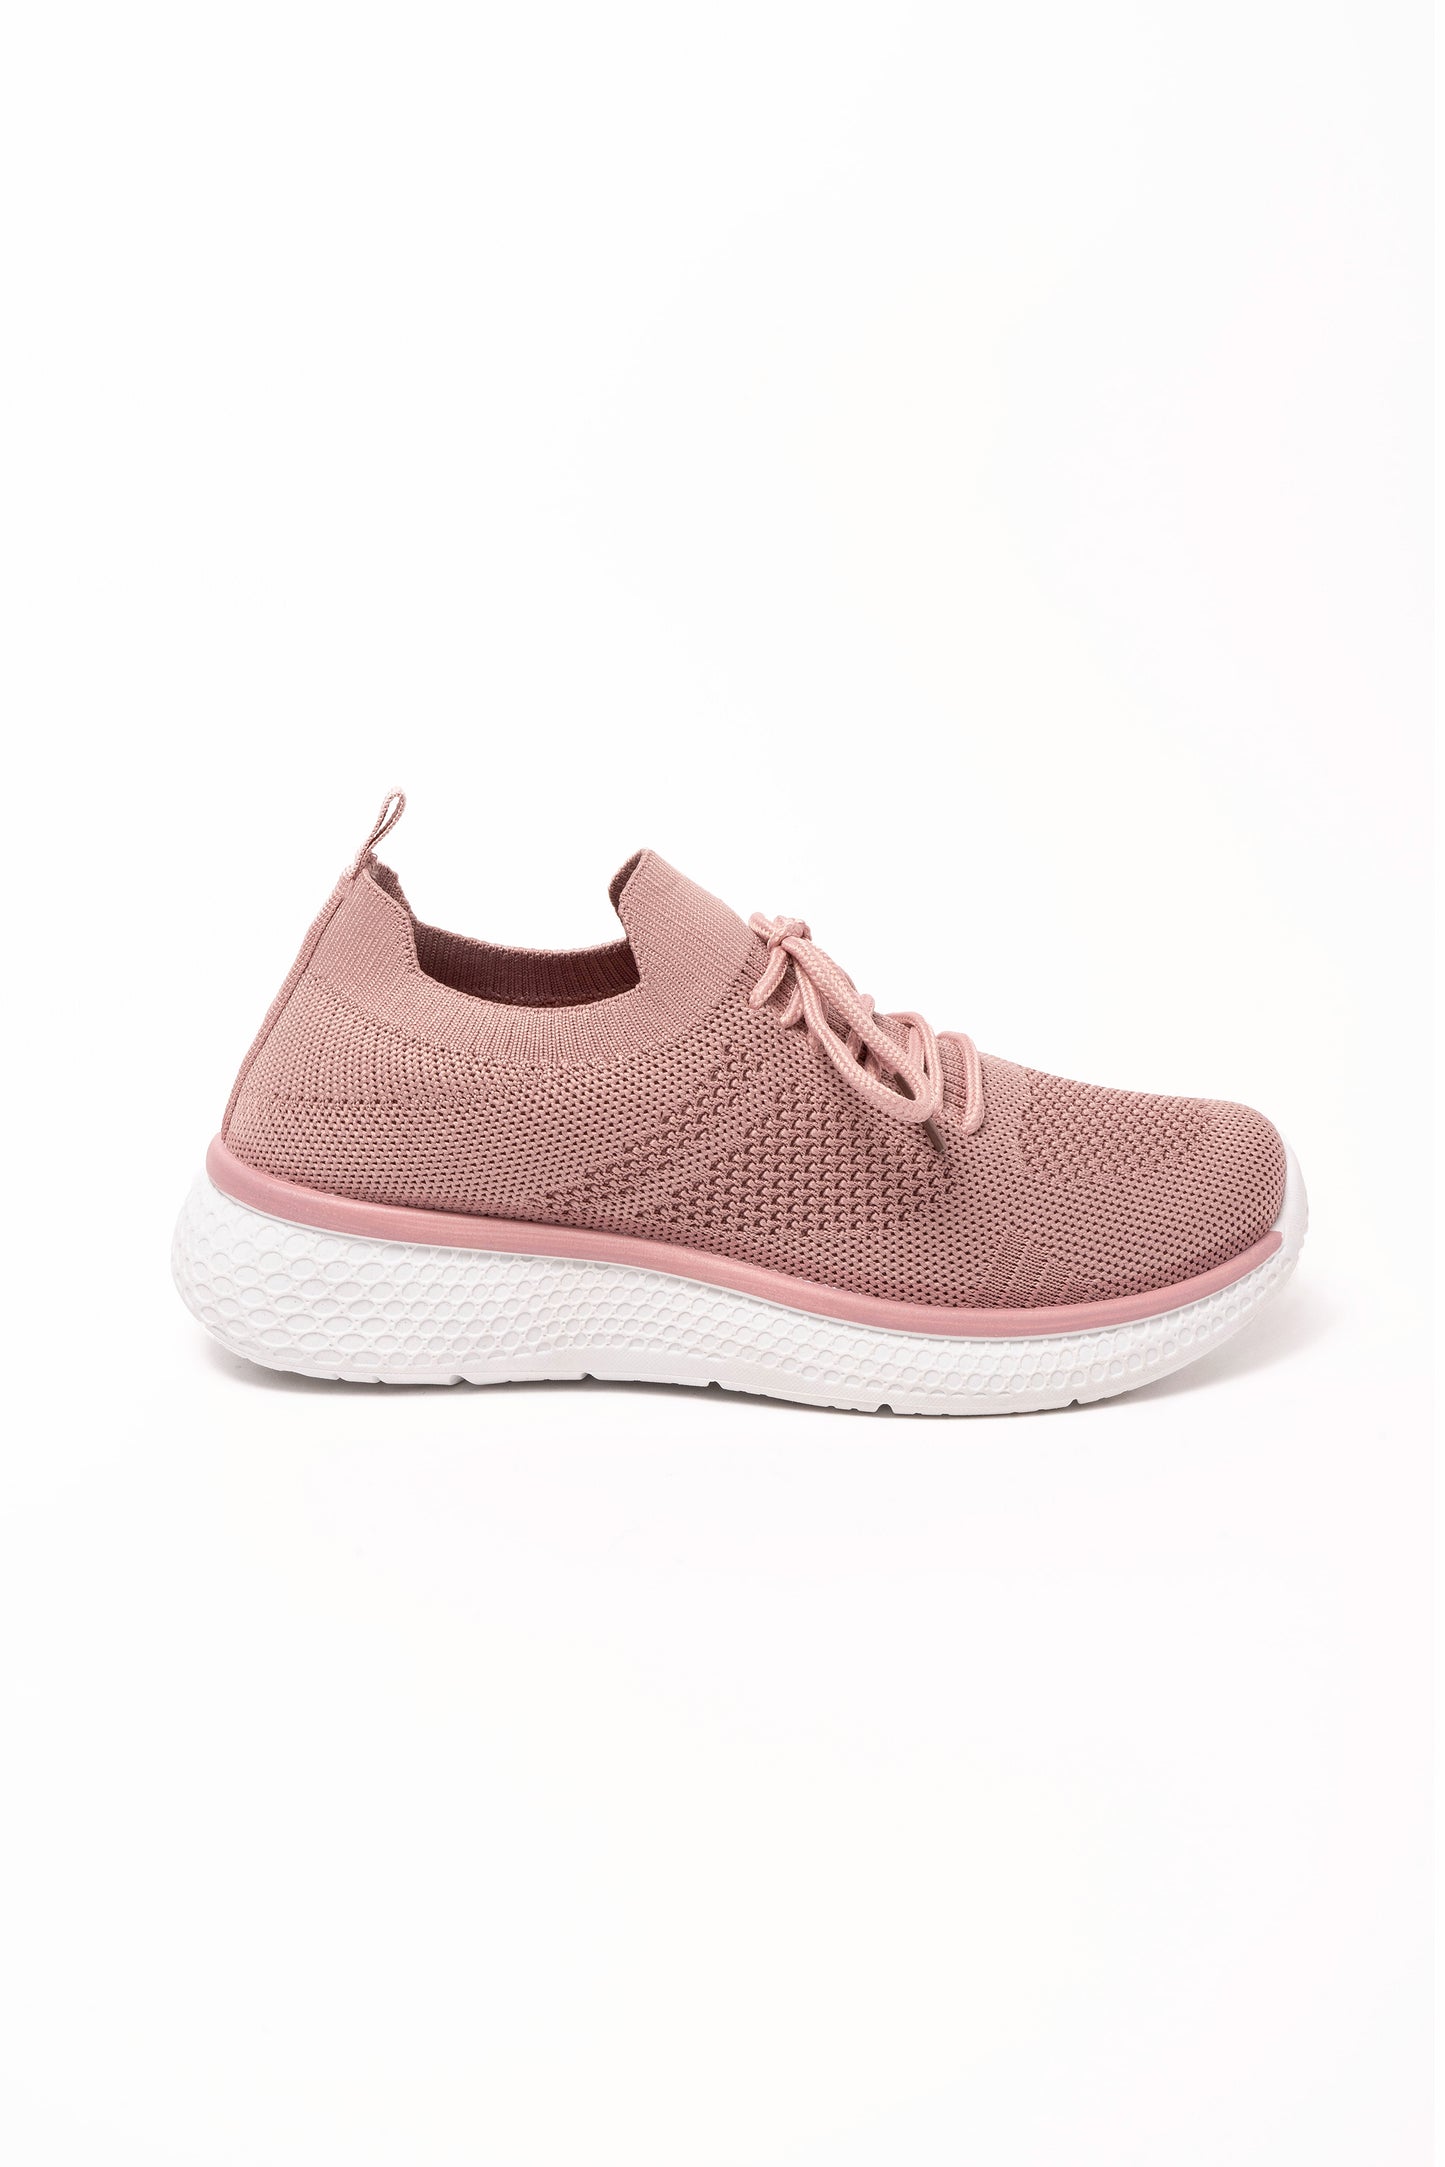 Zara Knitted Slip on Trainer Pink